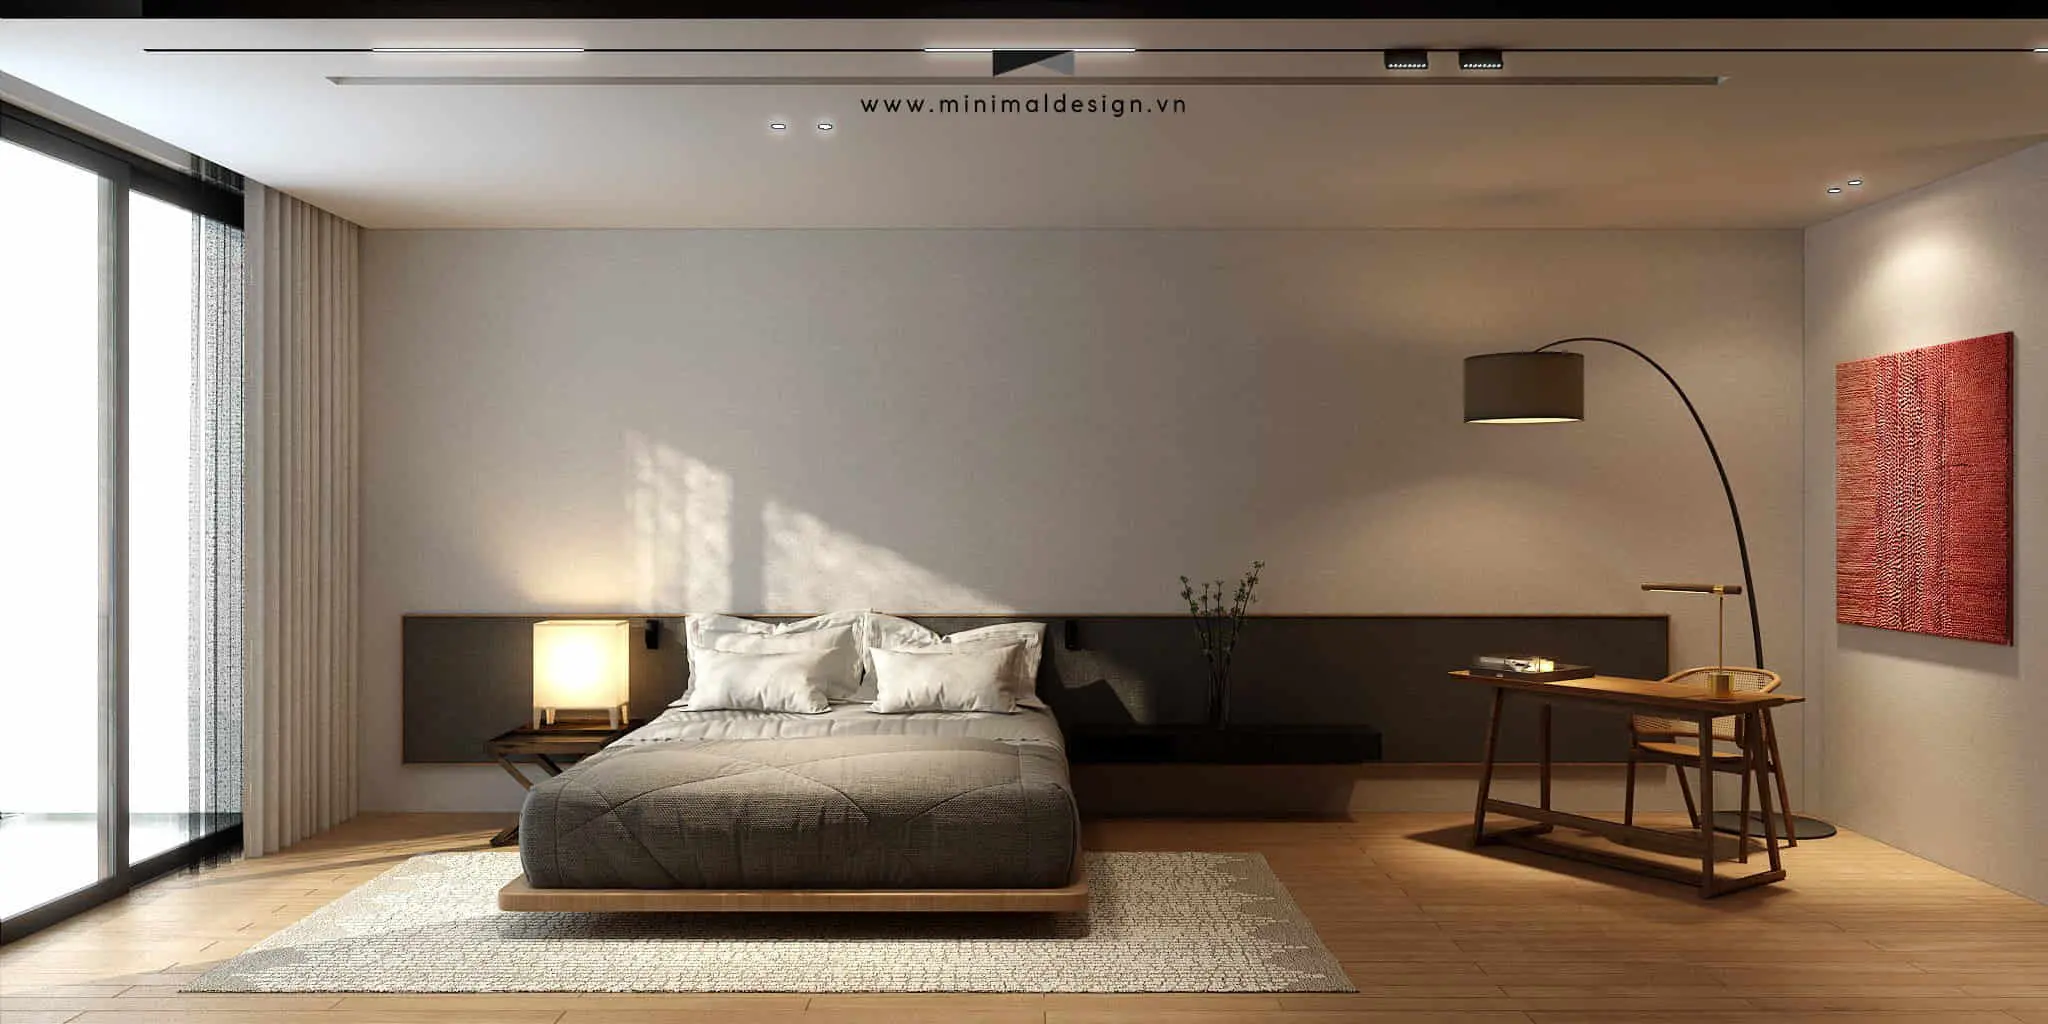 Thiết kế nội thất biệt thự tối giản và đầy sang trọng, tạo nên một không gian sống mà ở đó gia chủ cảm nhận được sự thư giãn, nhẹ nhàng và yêu thích.